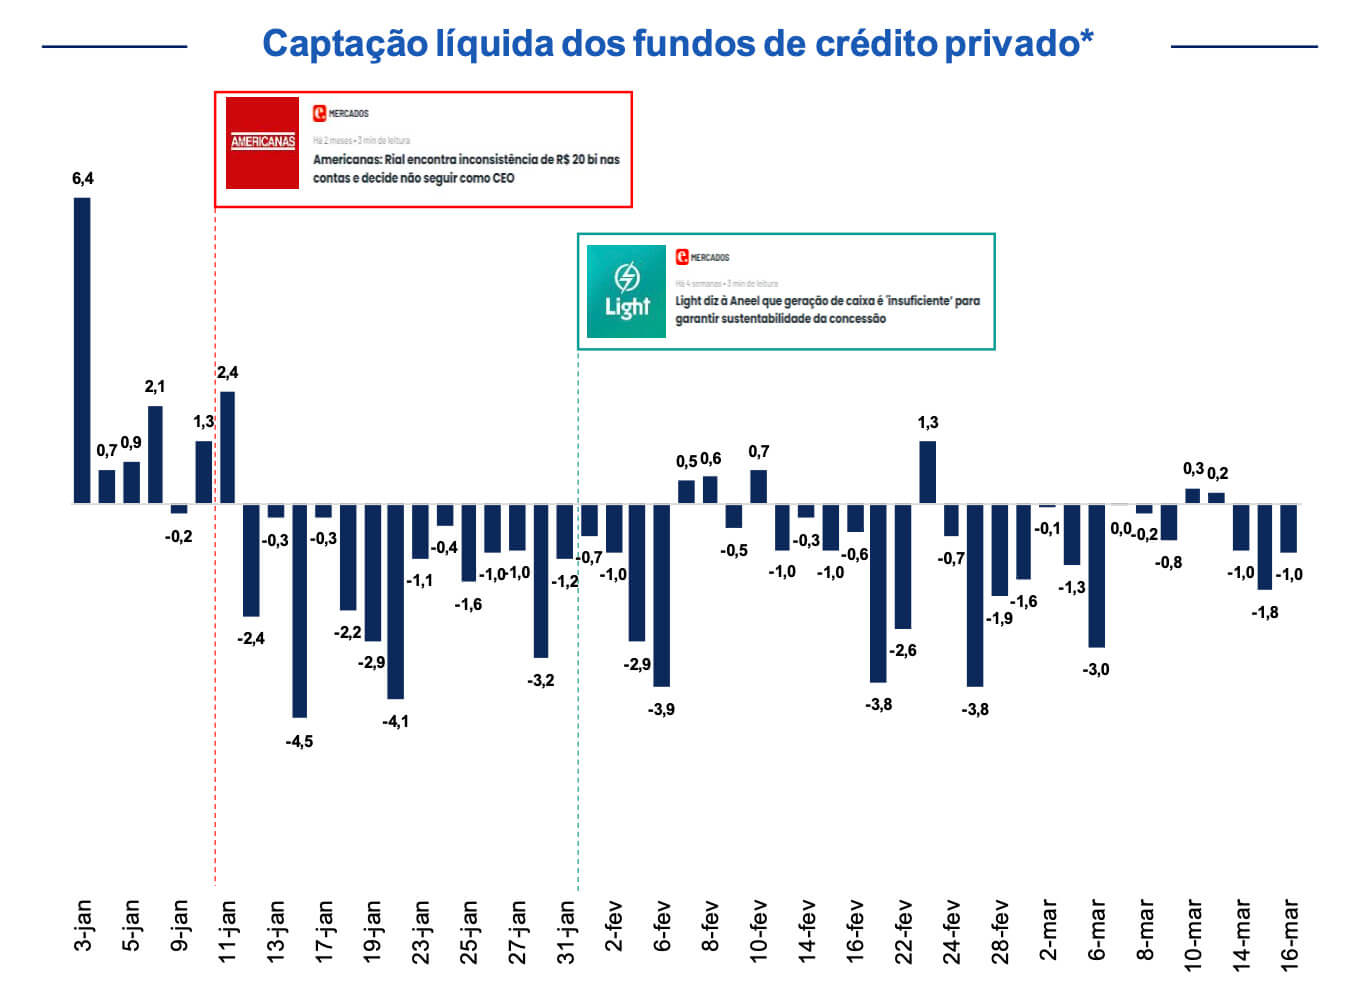 Gráfico mostra resgates de fundos de crédito privado após acontecimentos envolvendo problemas financeiros de Americanas e Light